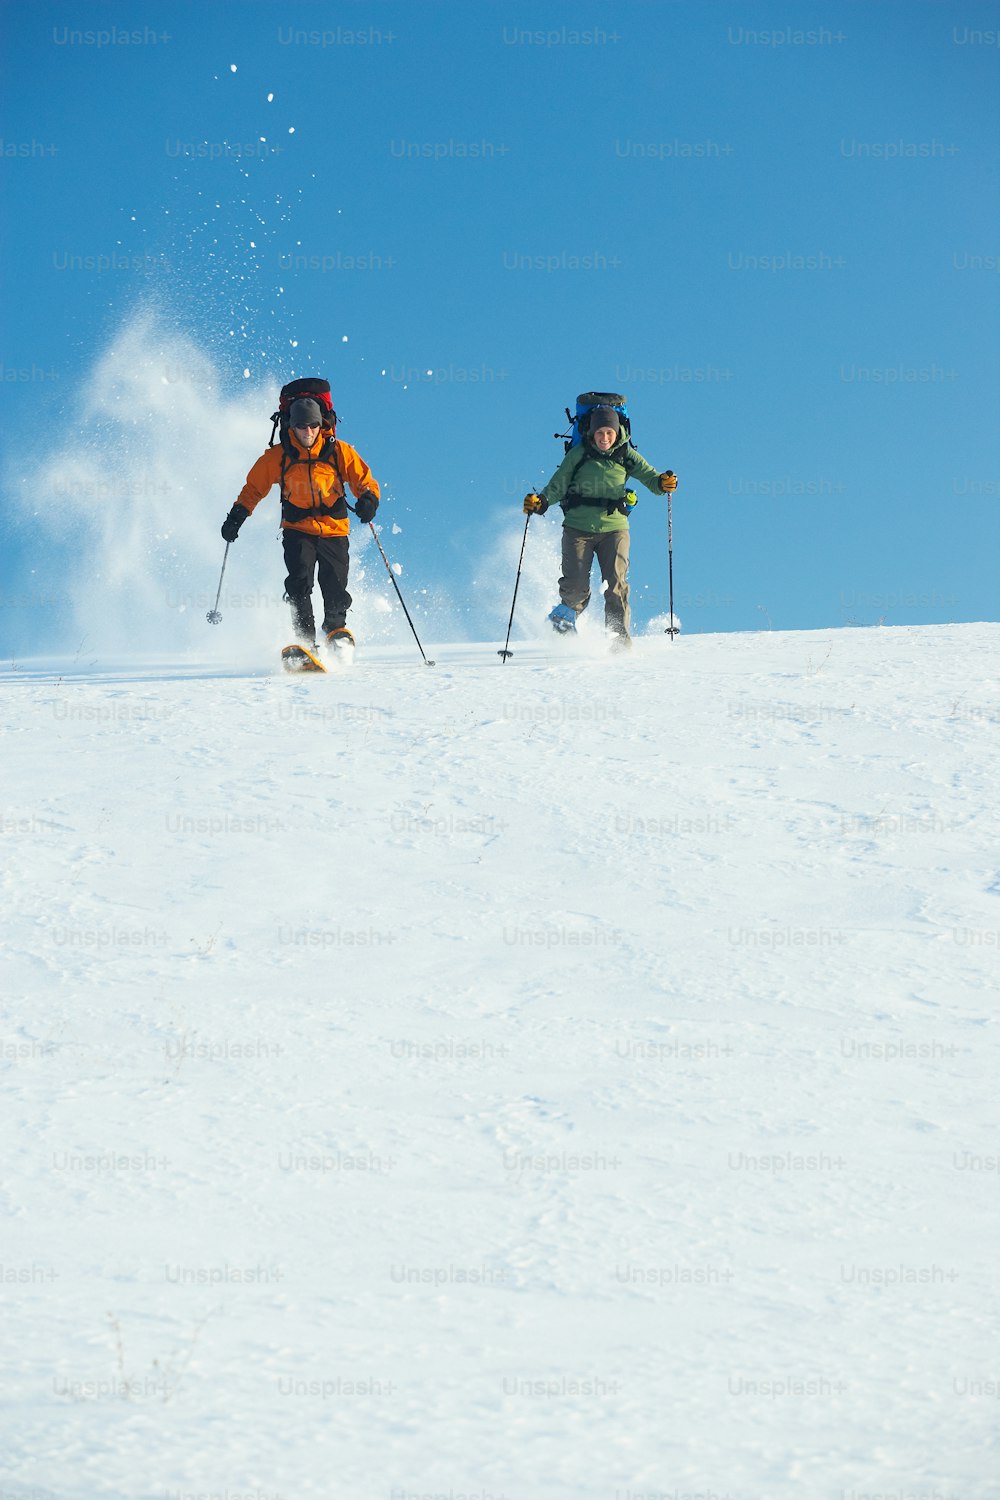 Ein paar Leute fahren auf Skiern einen schneebedeckten Hang hinunter